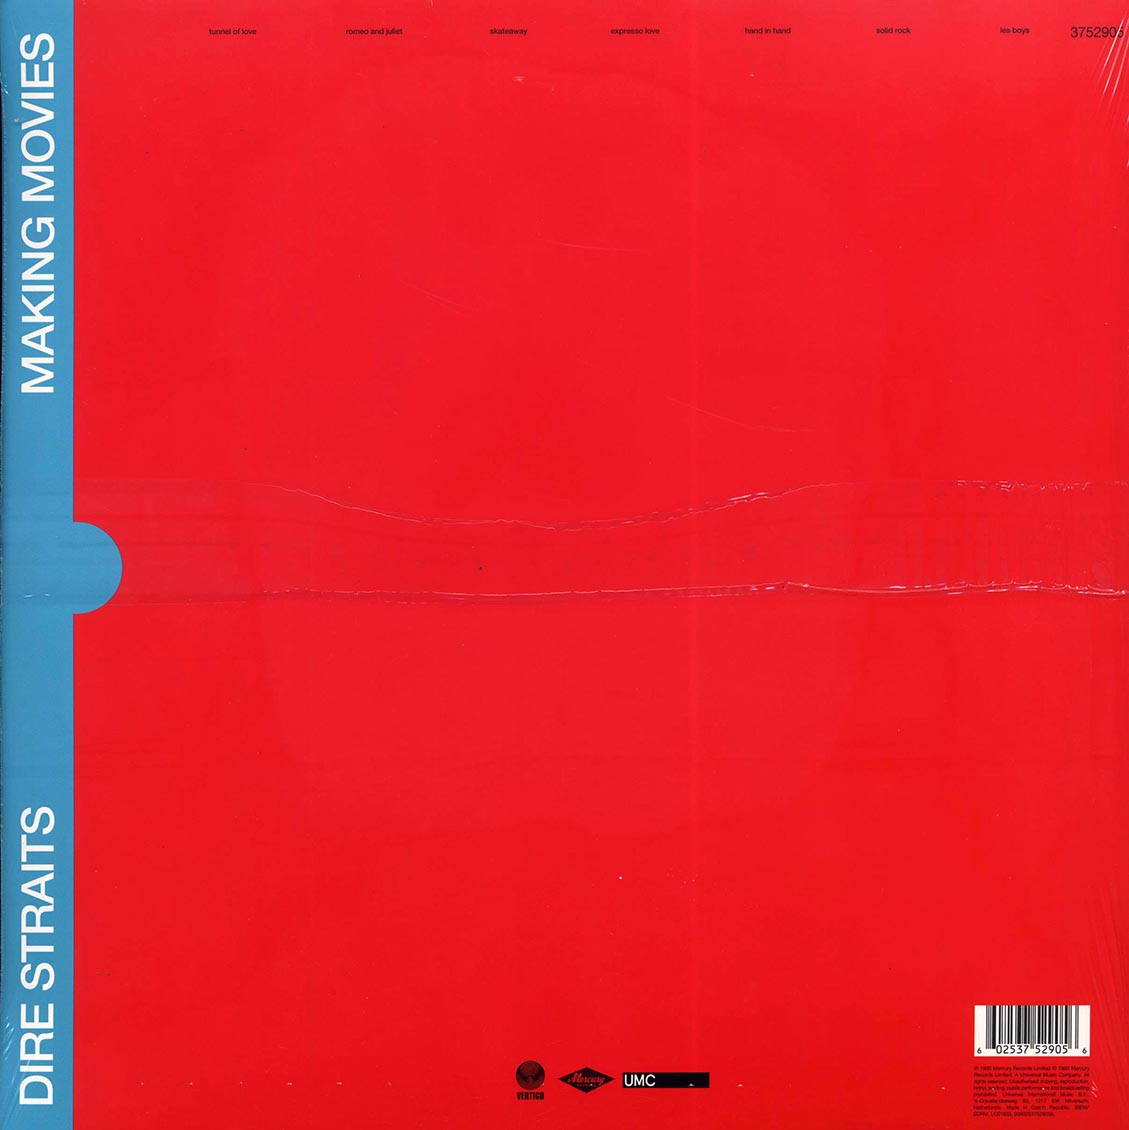 Dire Straits - Making Moves (180g) - Vinyl LP, LP